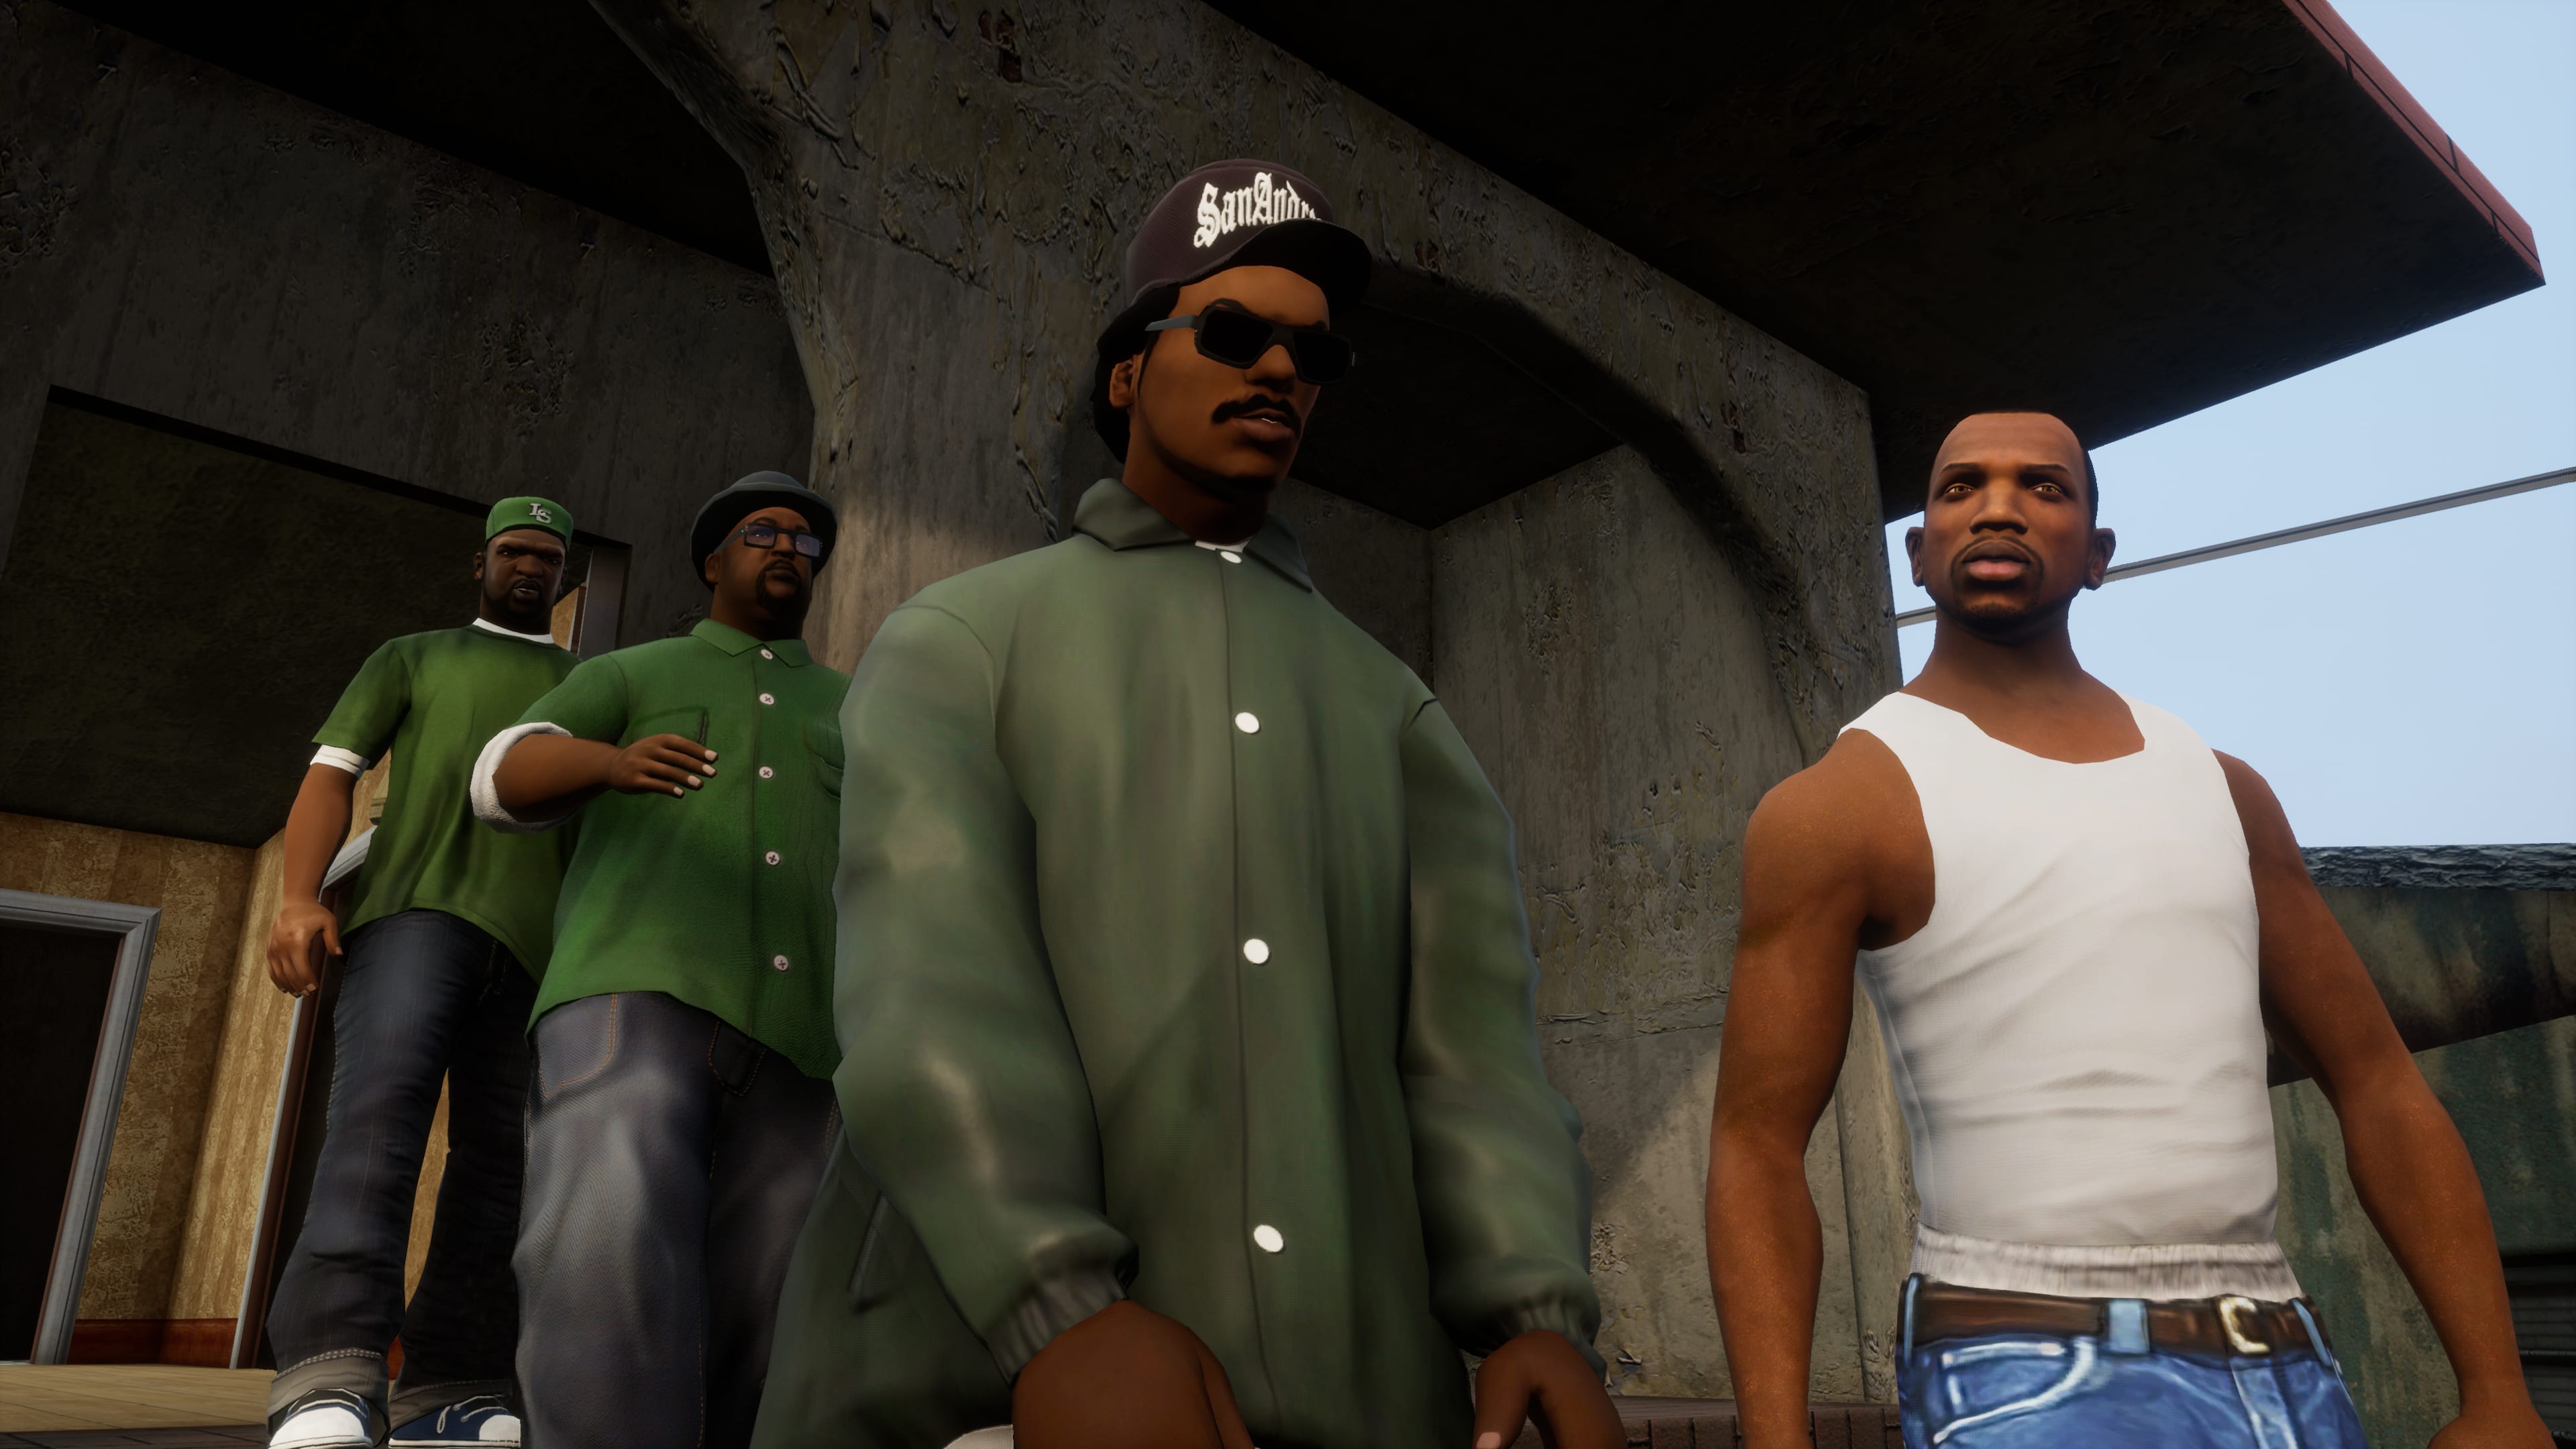 Os personagens se unem na edição remasterizada de Grand Theft Auto: San Andreas.